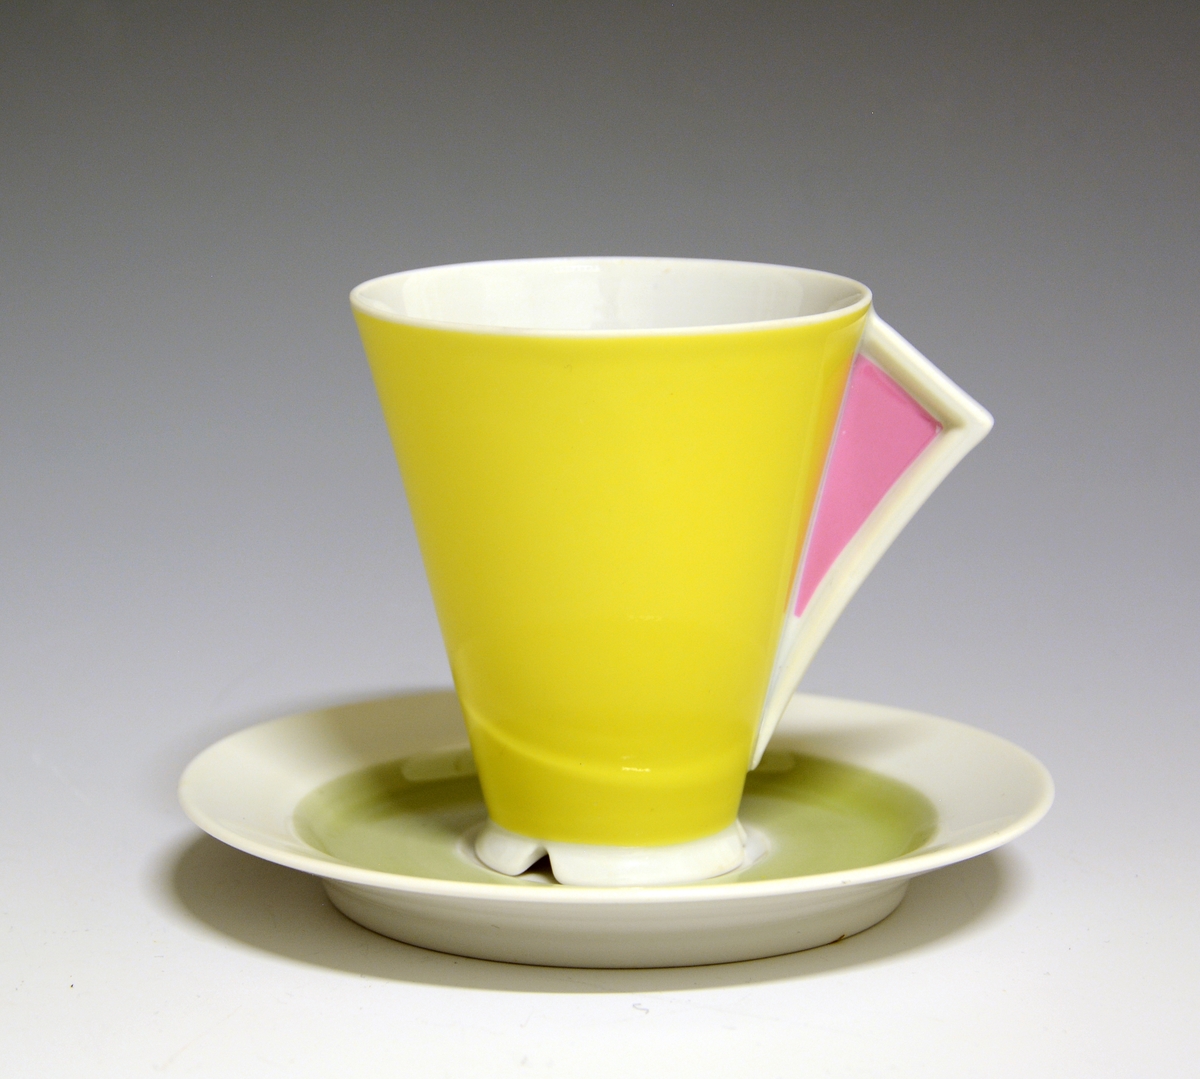 Kaffeskål av porselen, dekorert med et lysegrønt bånd innerst på fanen.
Modell: Style

Hører ikke til koppen TGM.2019:158.A.